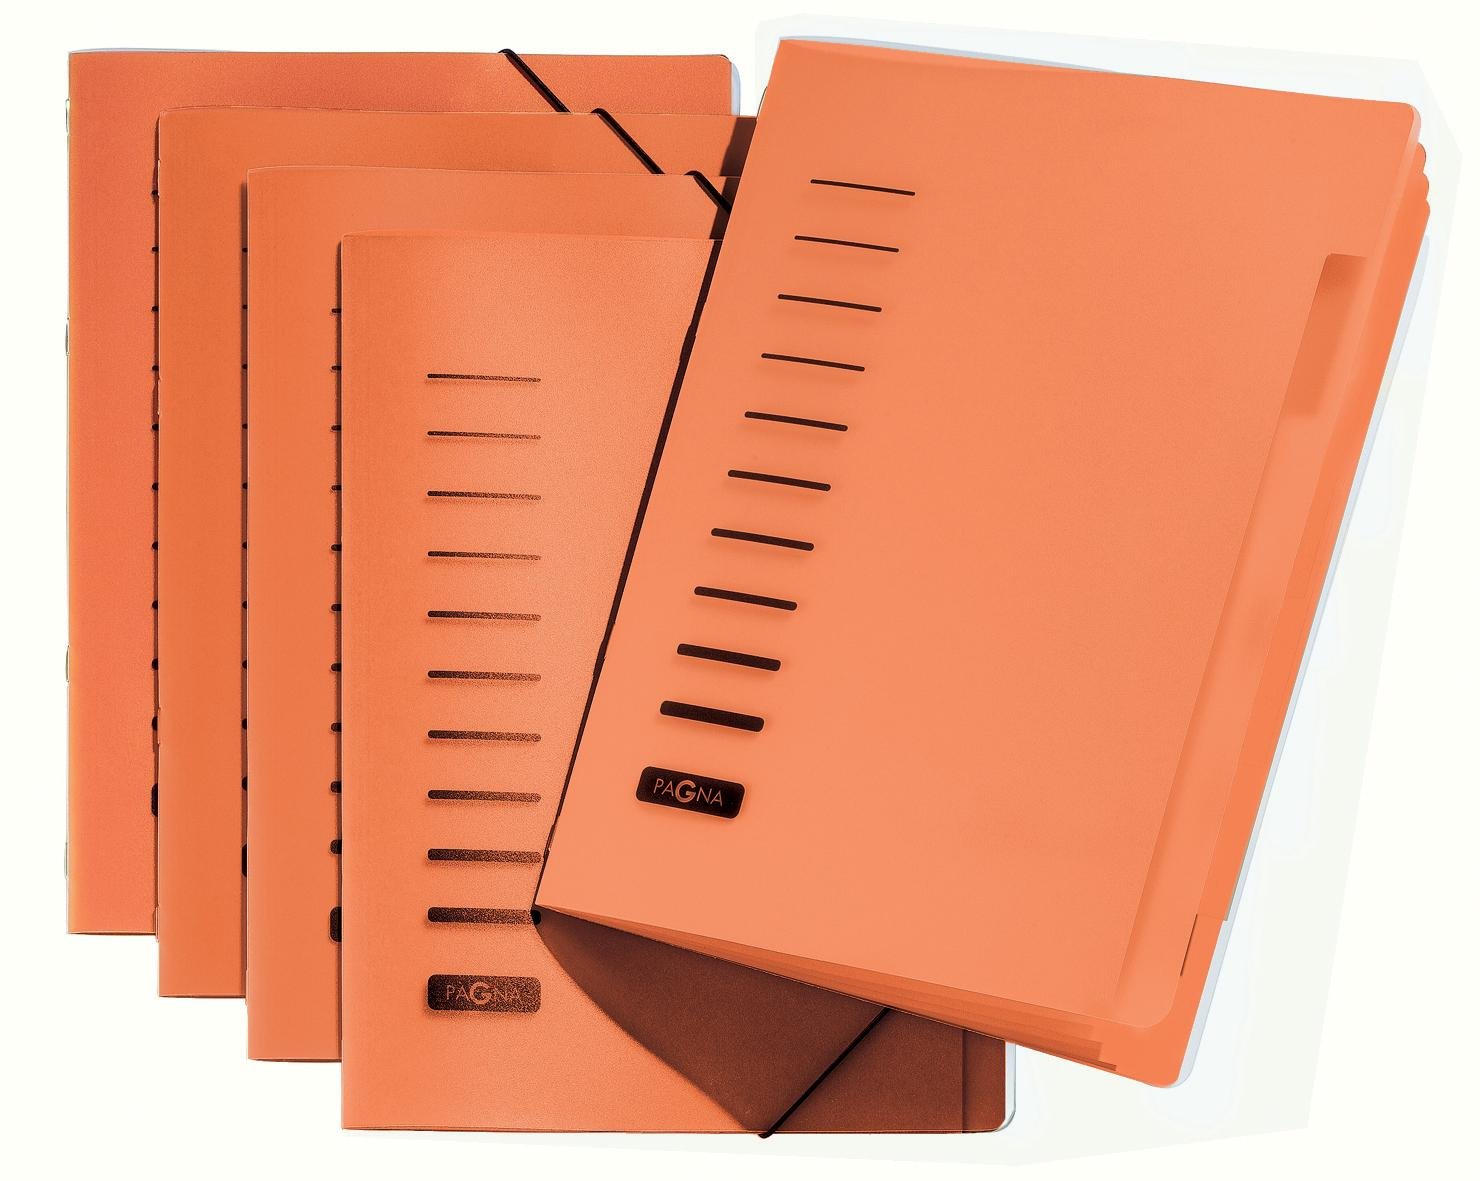 5 Stück Pagna Ordnungsmappe 6-teilig aus PP, Eckspanngummi, farbiger Registerkarton [ orange ]